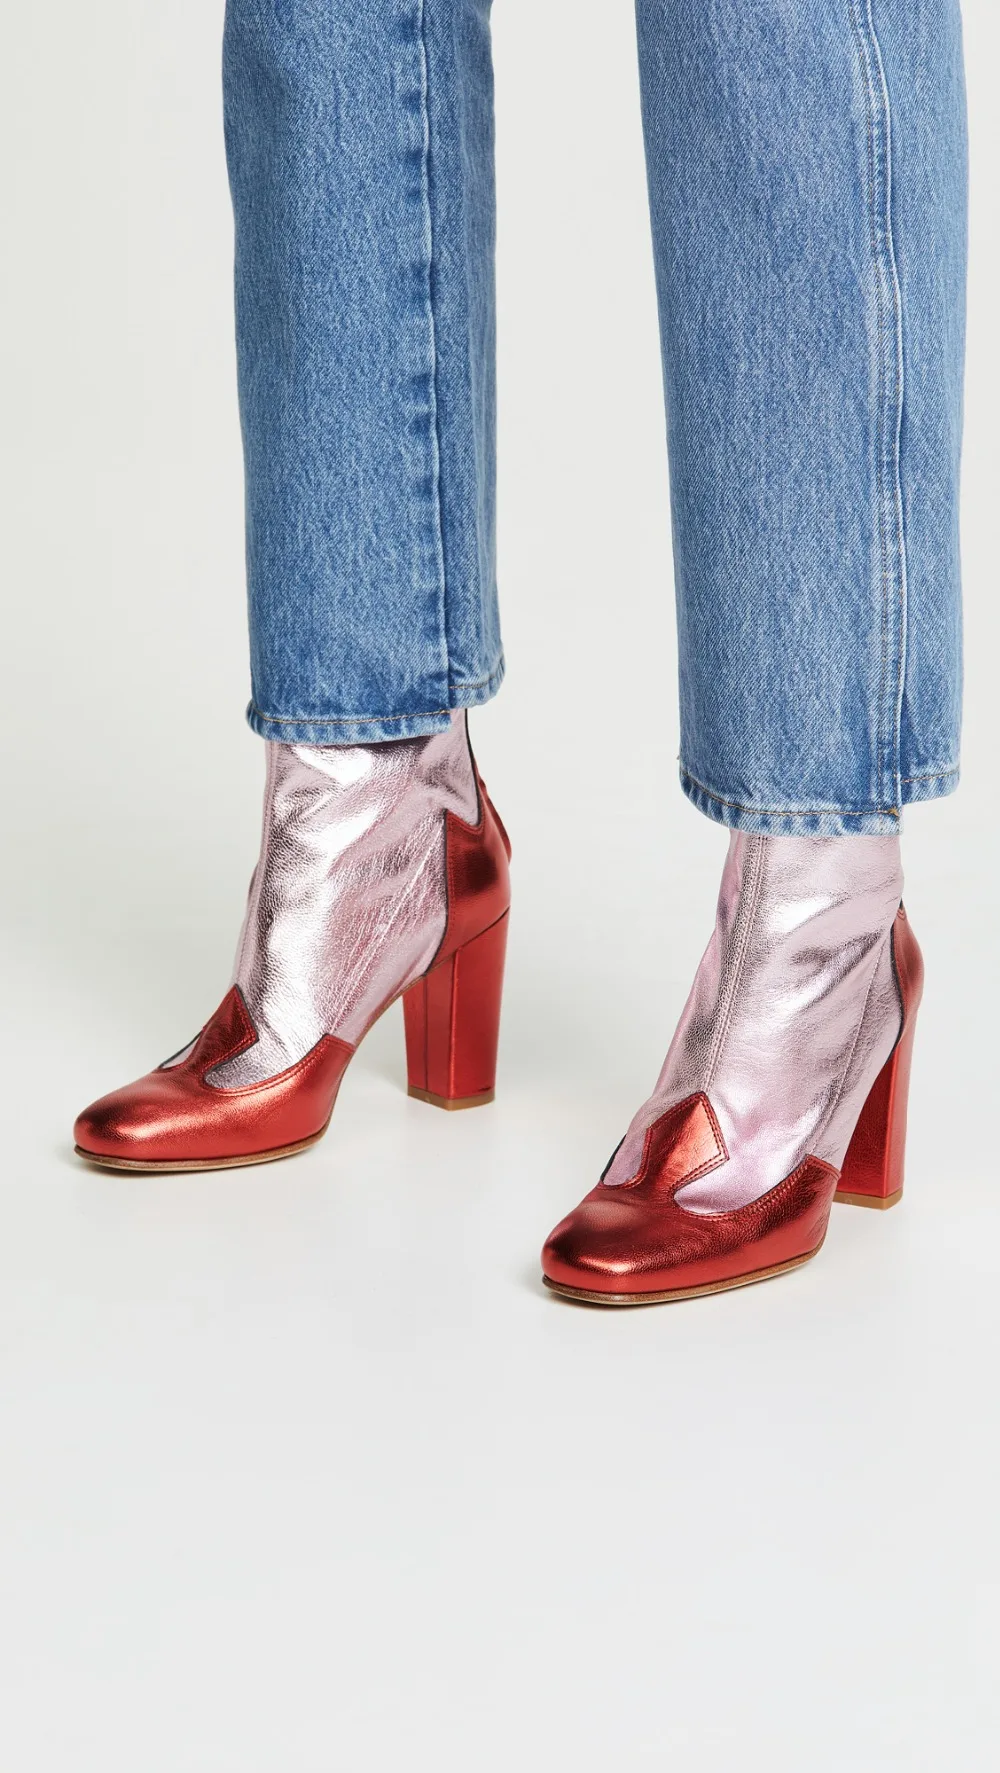 Lou/женские ботильоны красного и белого цвета Роскошная женская обувь смешанных цветов из лакированной кожи на квадратном каблуке 10 см с молнией сзади; большие размеры 45, 46, 41